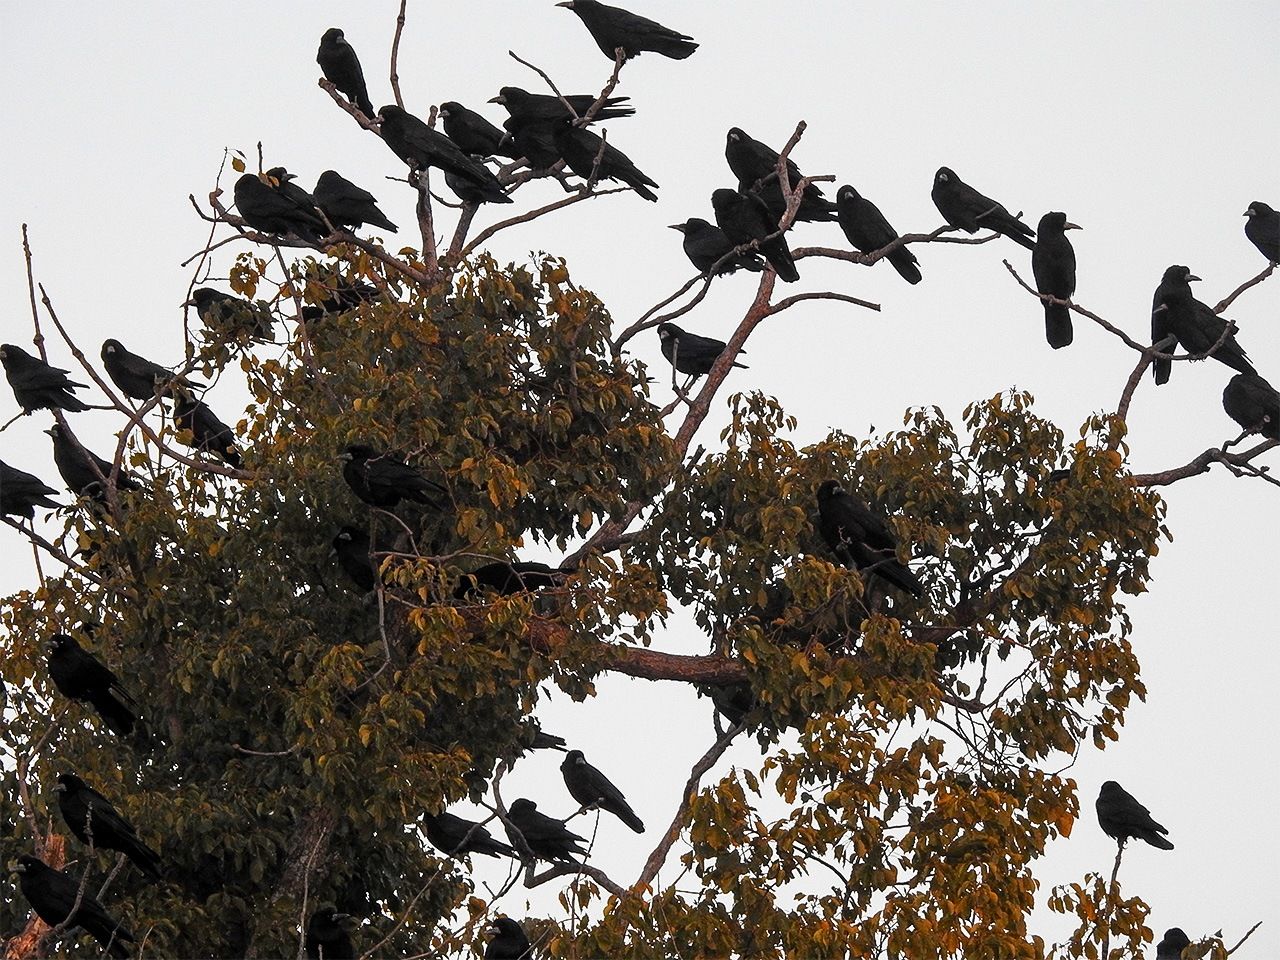 Cuervos sobre un árbol de una zona urbana. Los excrementos y los graznidos son un problema.